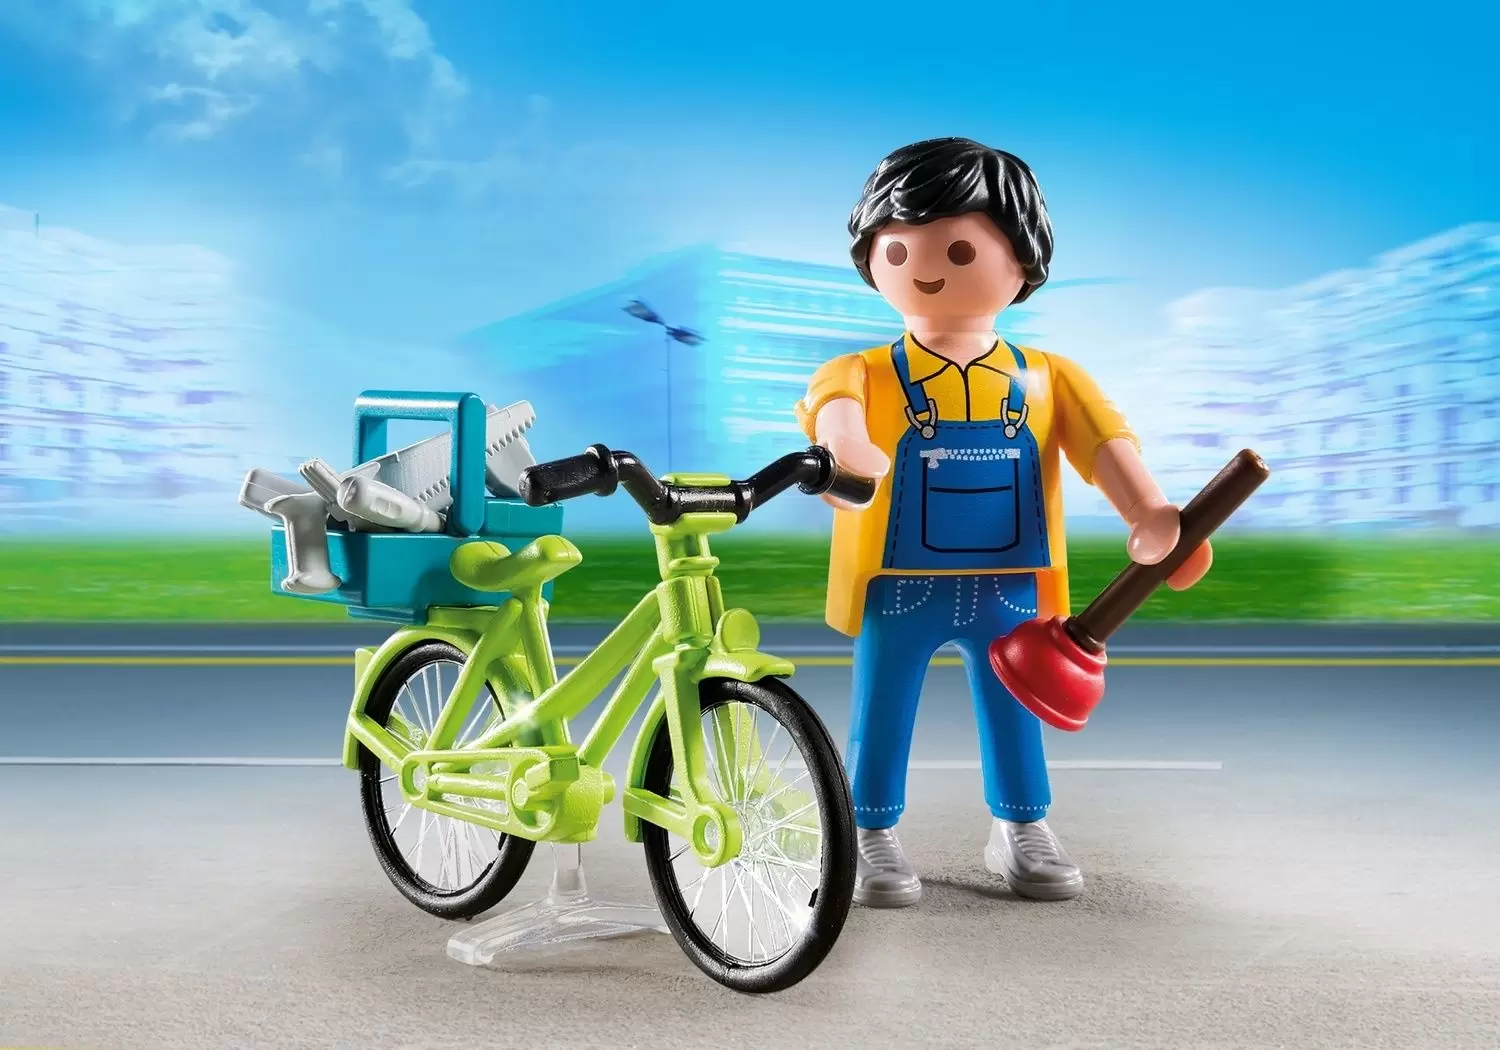 Playmobil SpecialPlus - Handyman with Bike